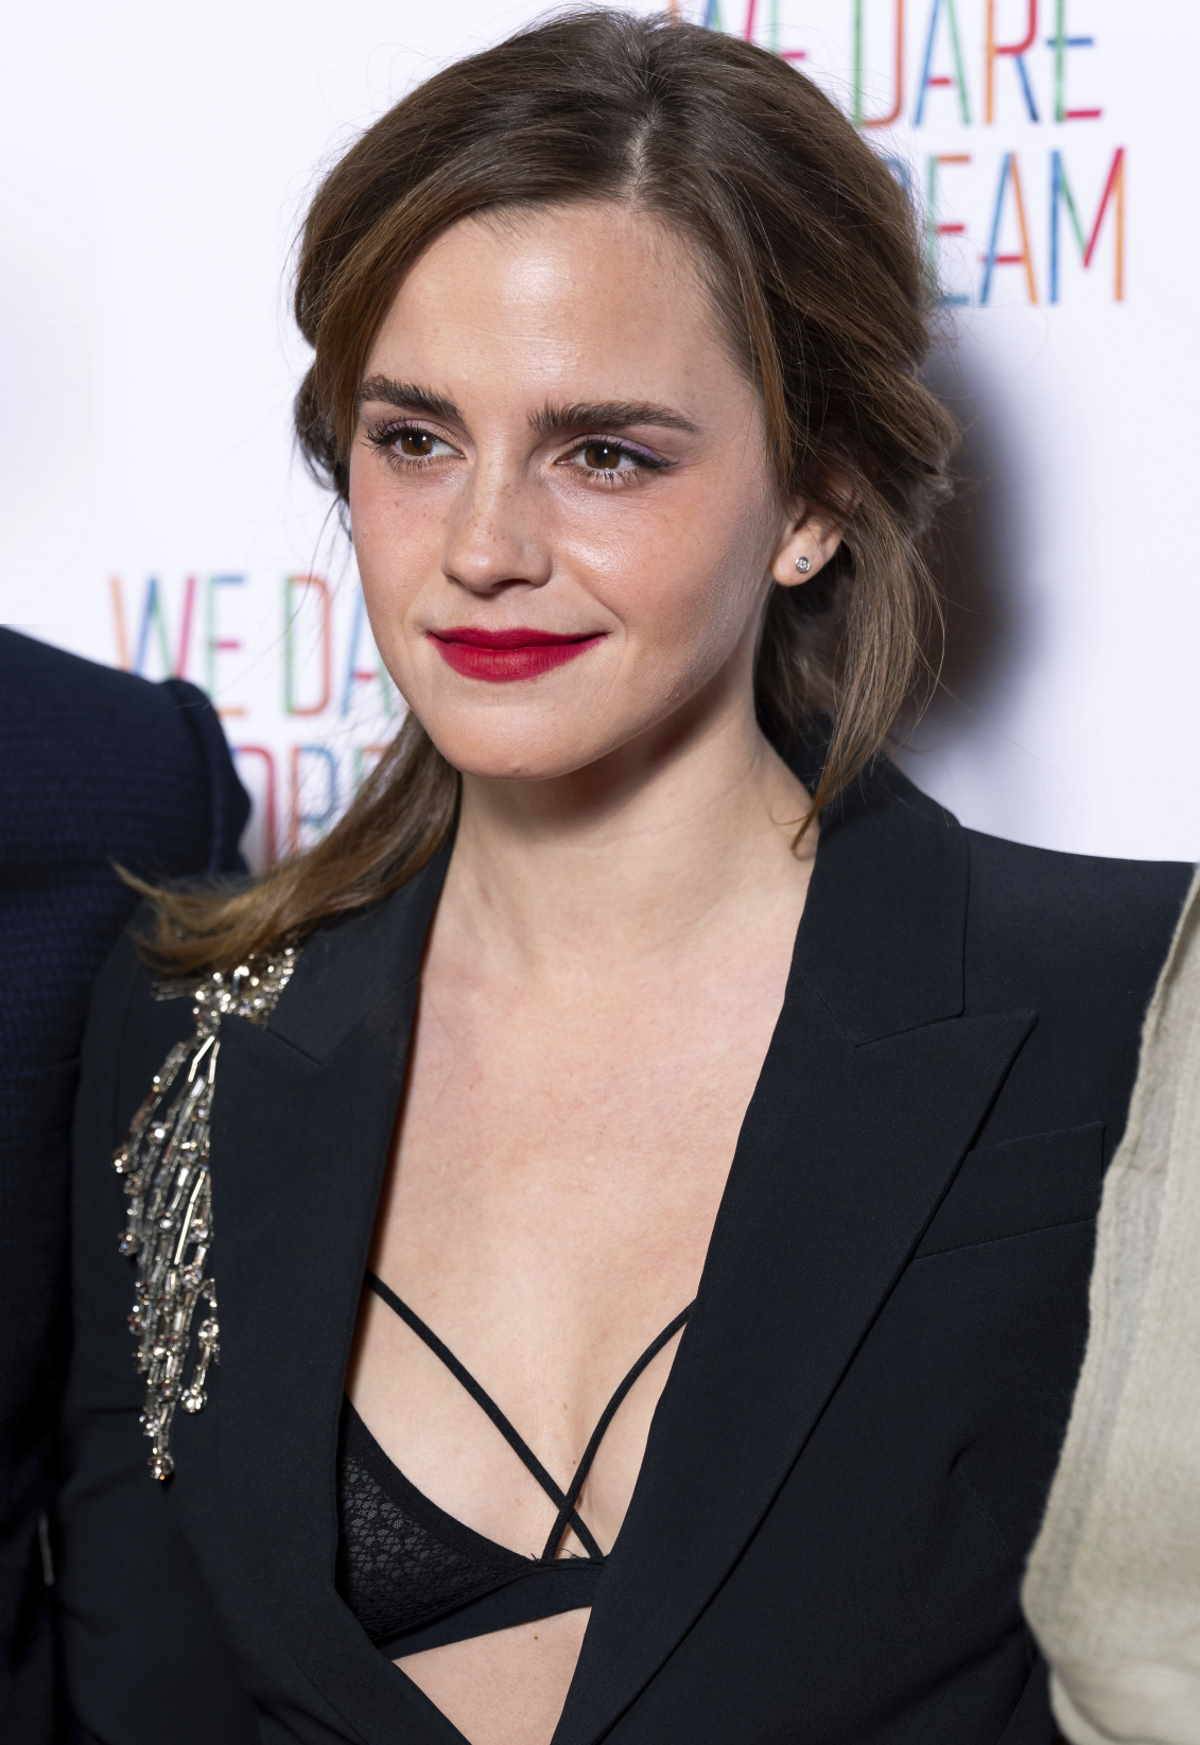 Aktorka Emma Watson, gwiazda „Harry’ego Pottera” pojawiła się na premierze nowego filmu w stylizacji z garniturem i wystającym biustonoszem.